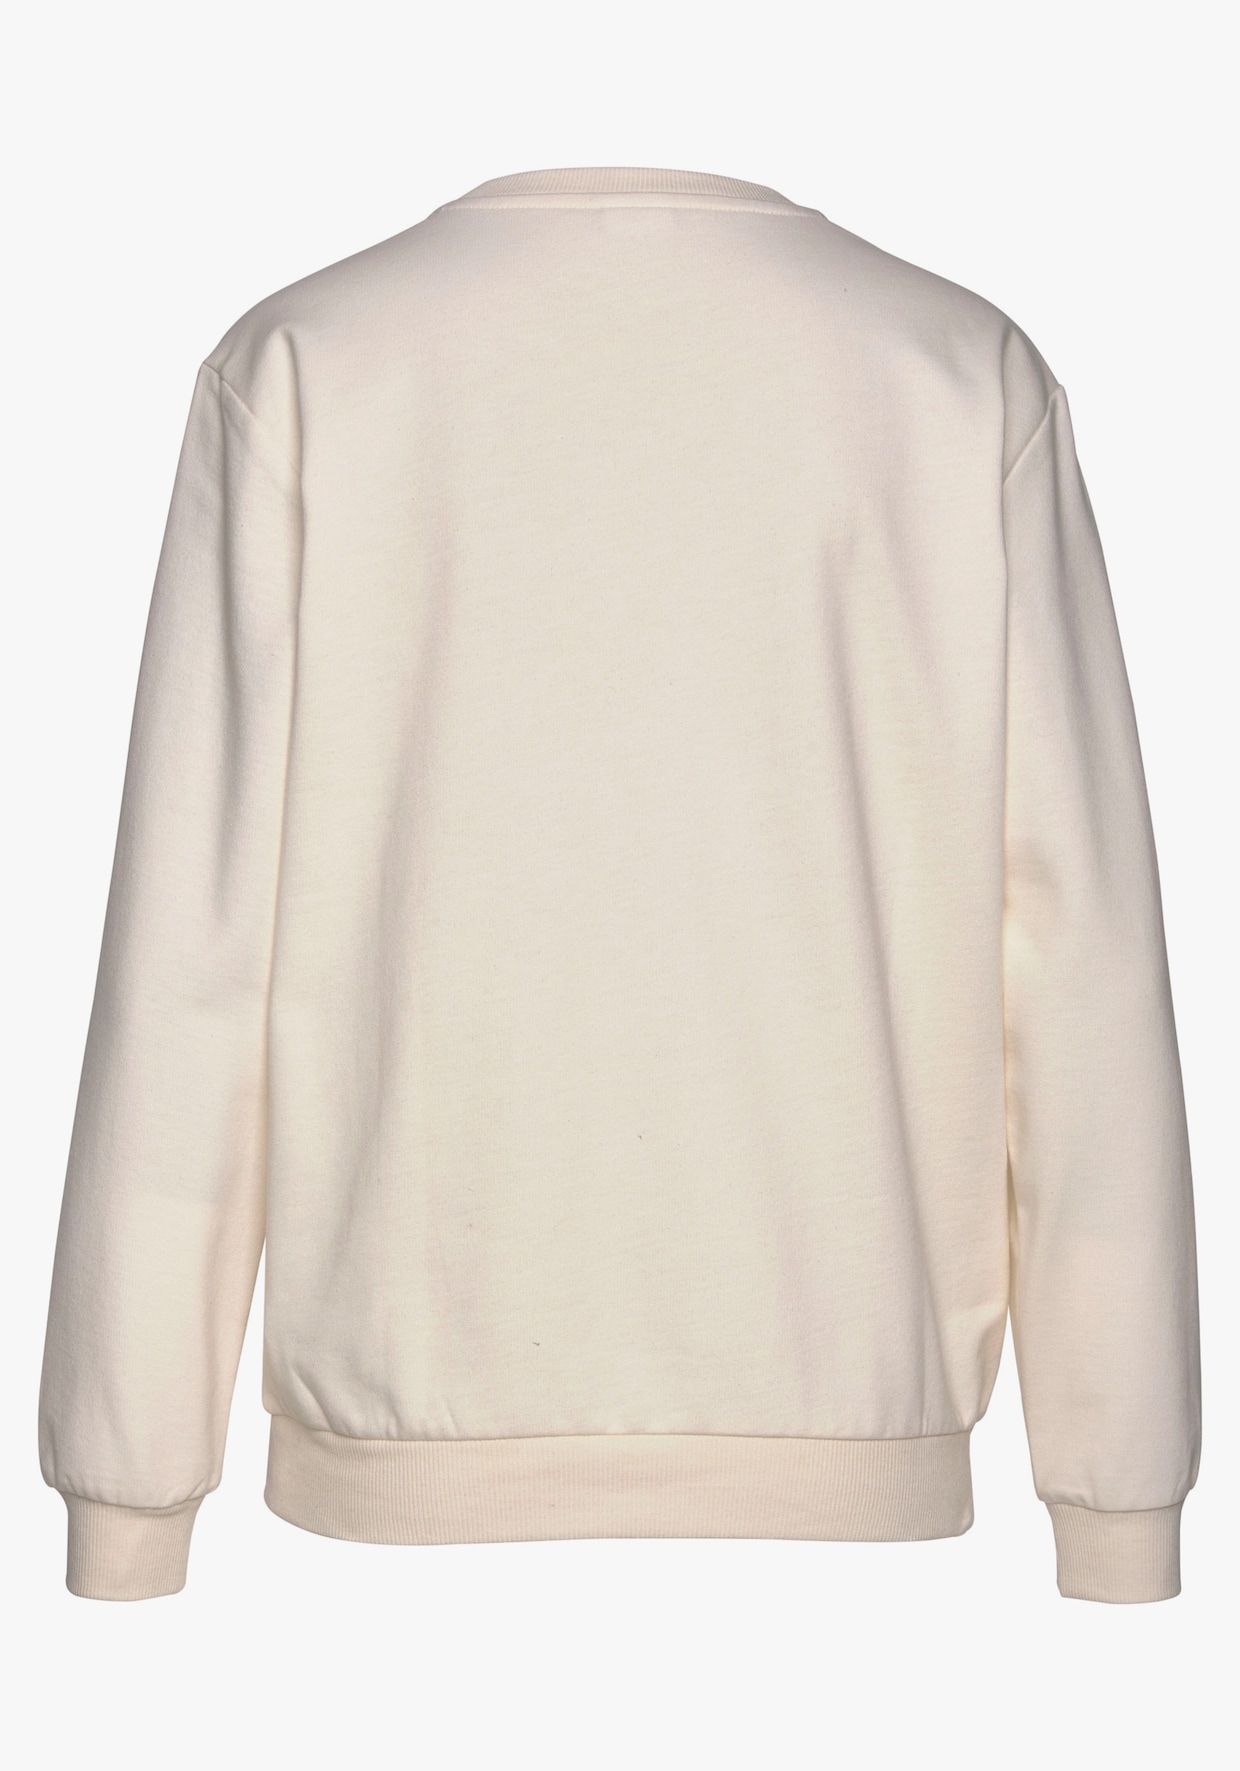 LASCANA Sweatshirt - beige clair-couleur ivoire-rose clair